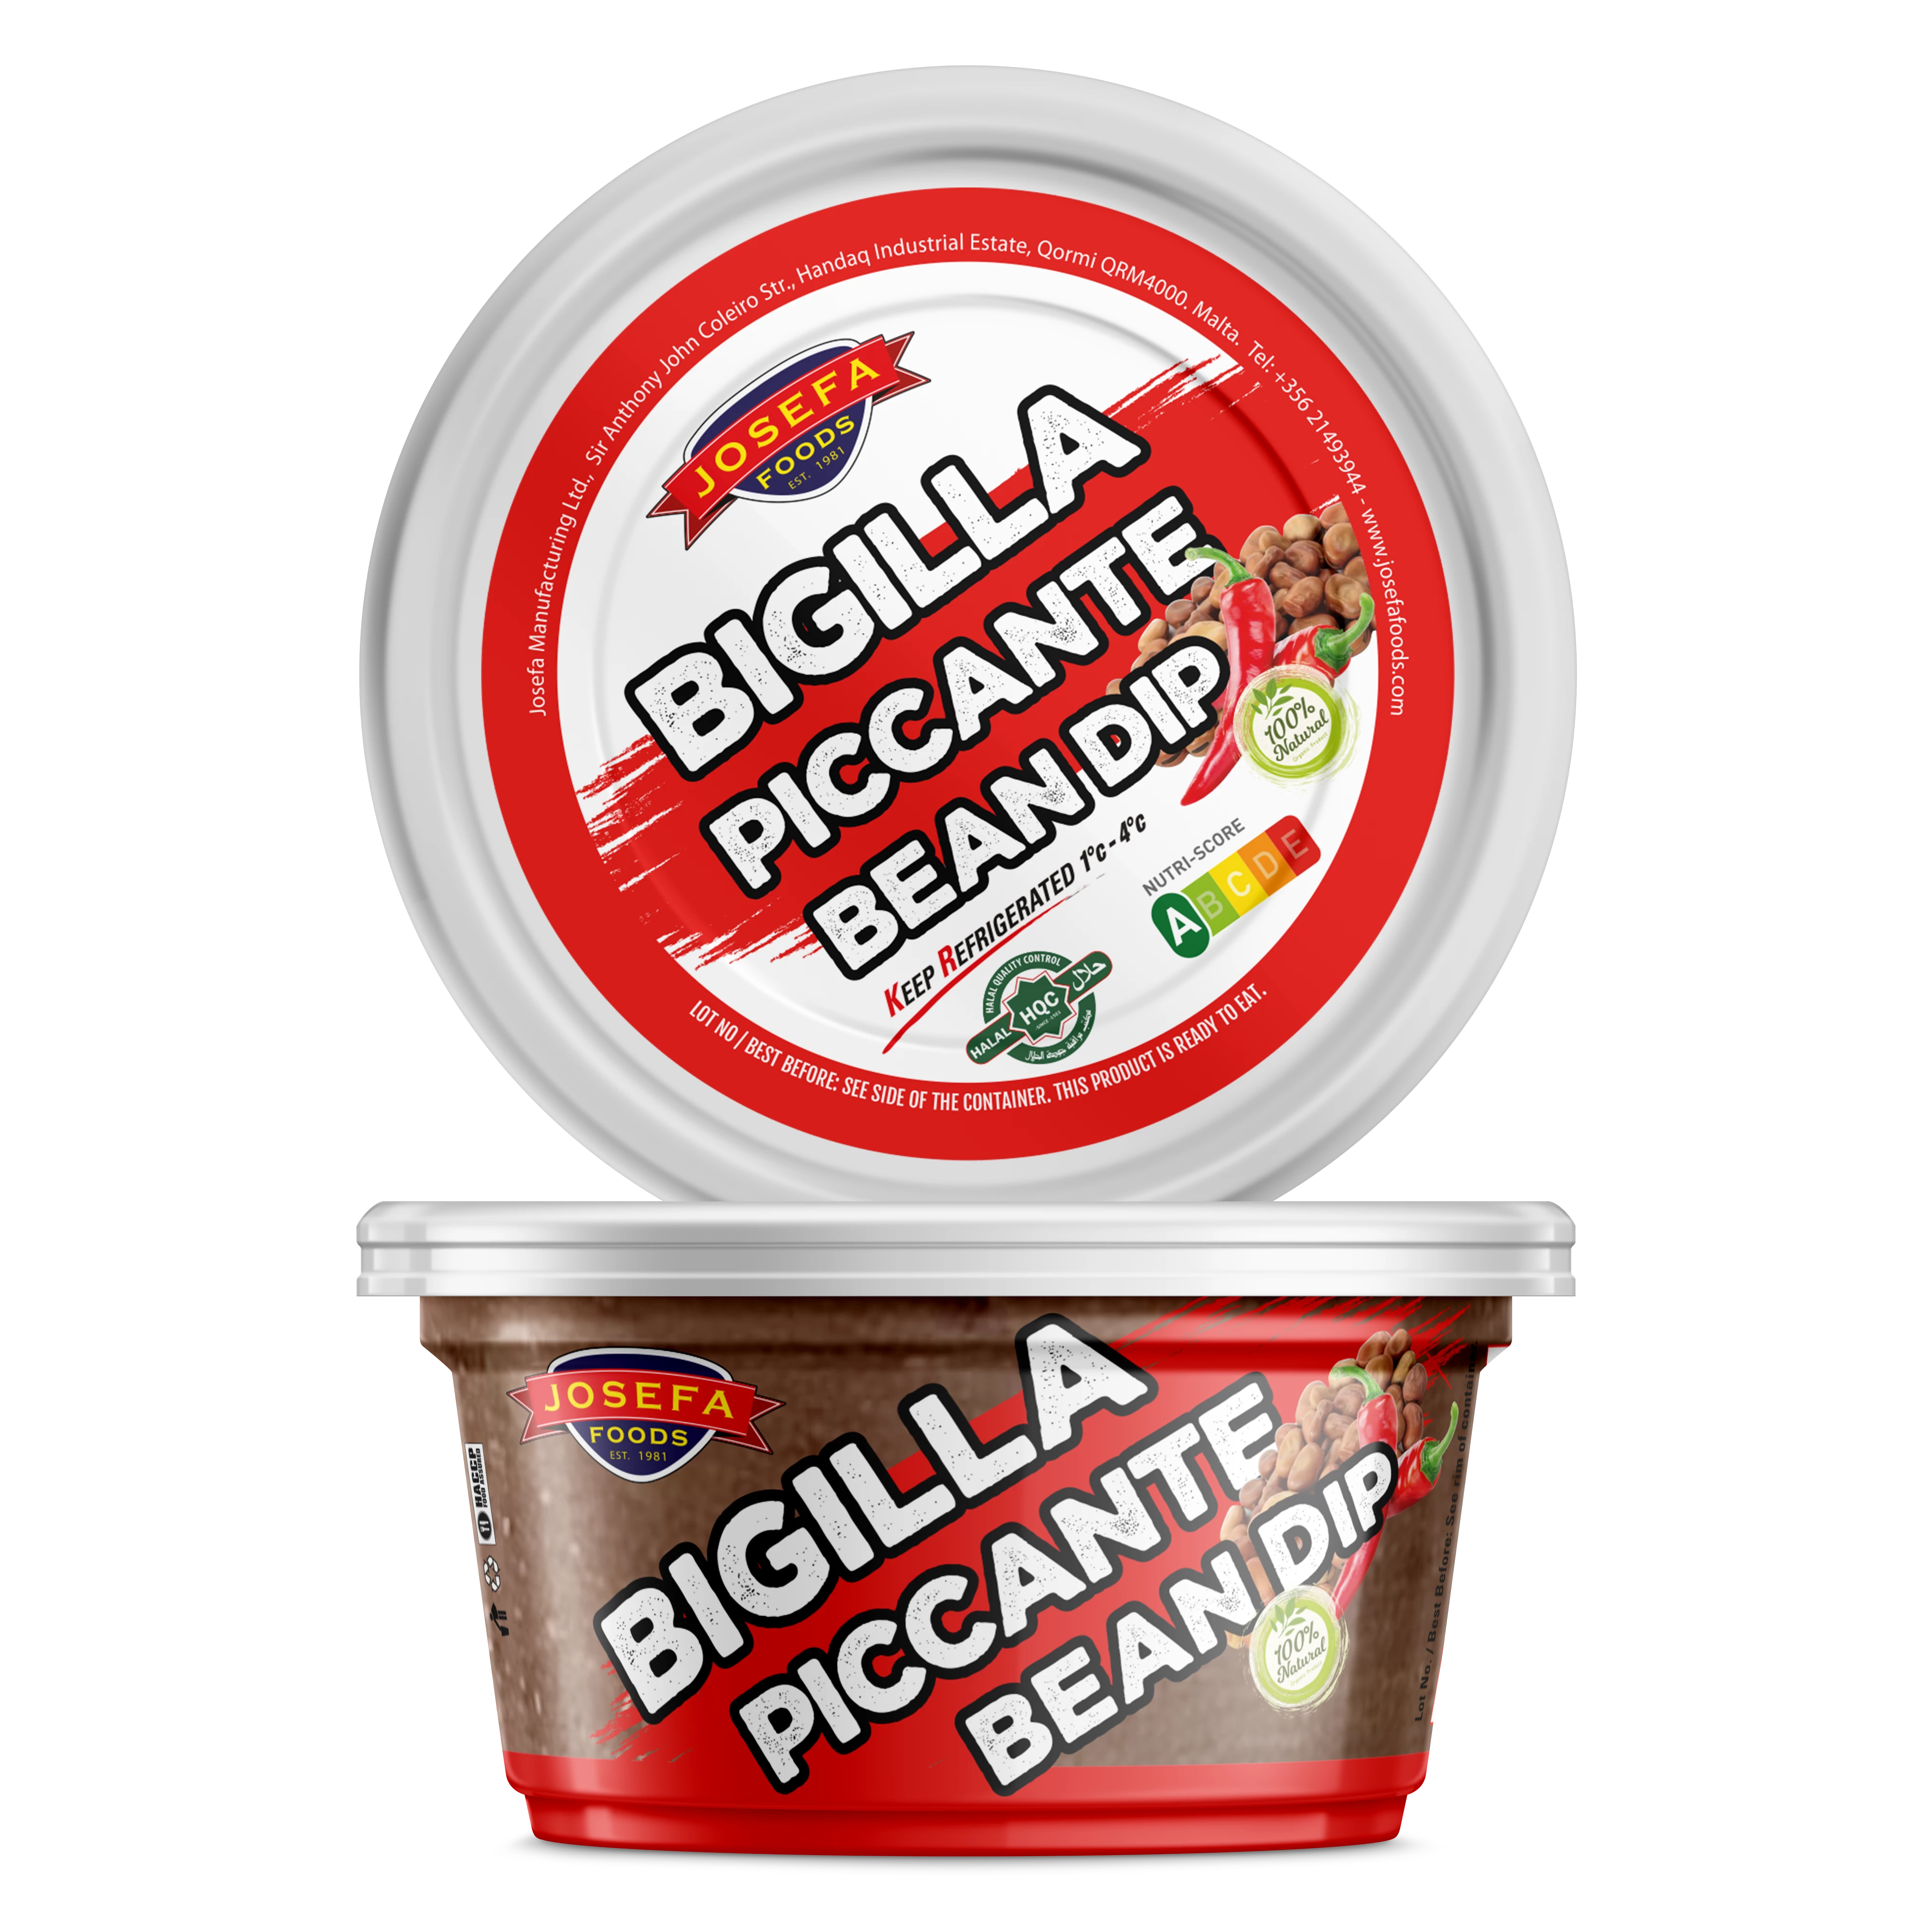 Bigilla Piccante（蚕豆蘸酱）200gr - Josefa